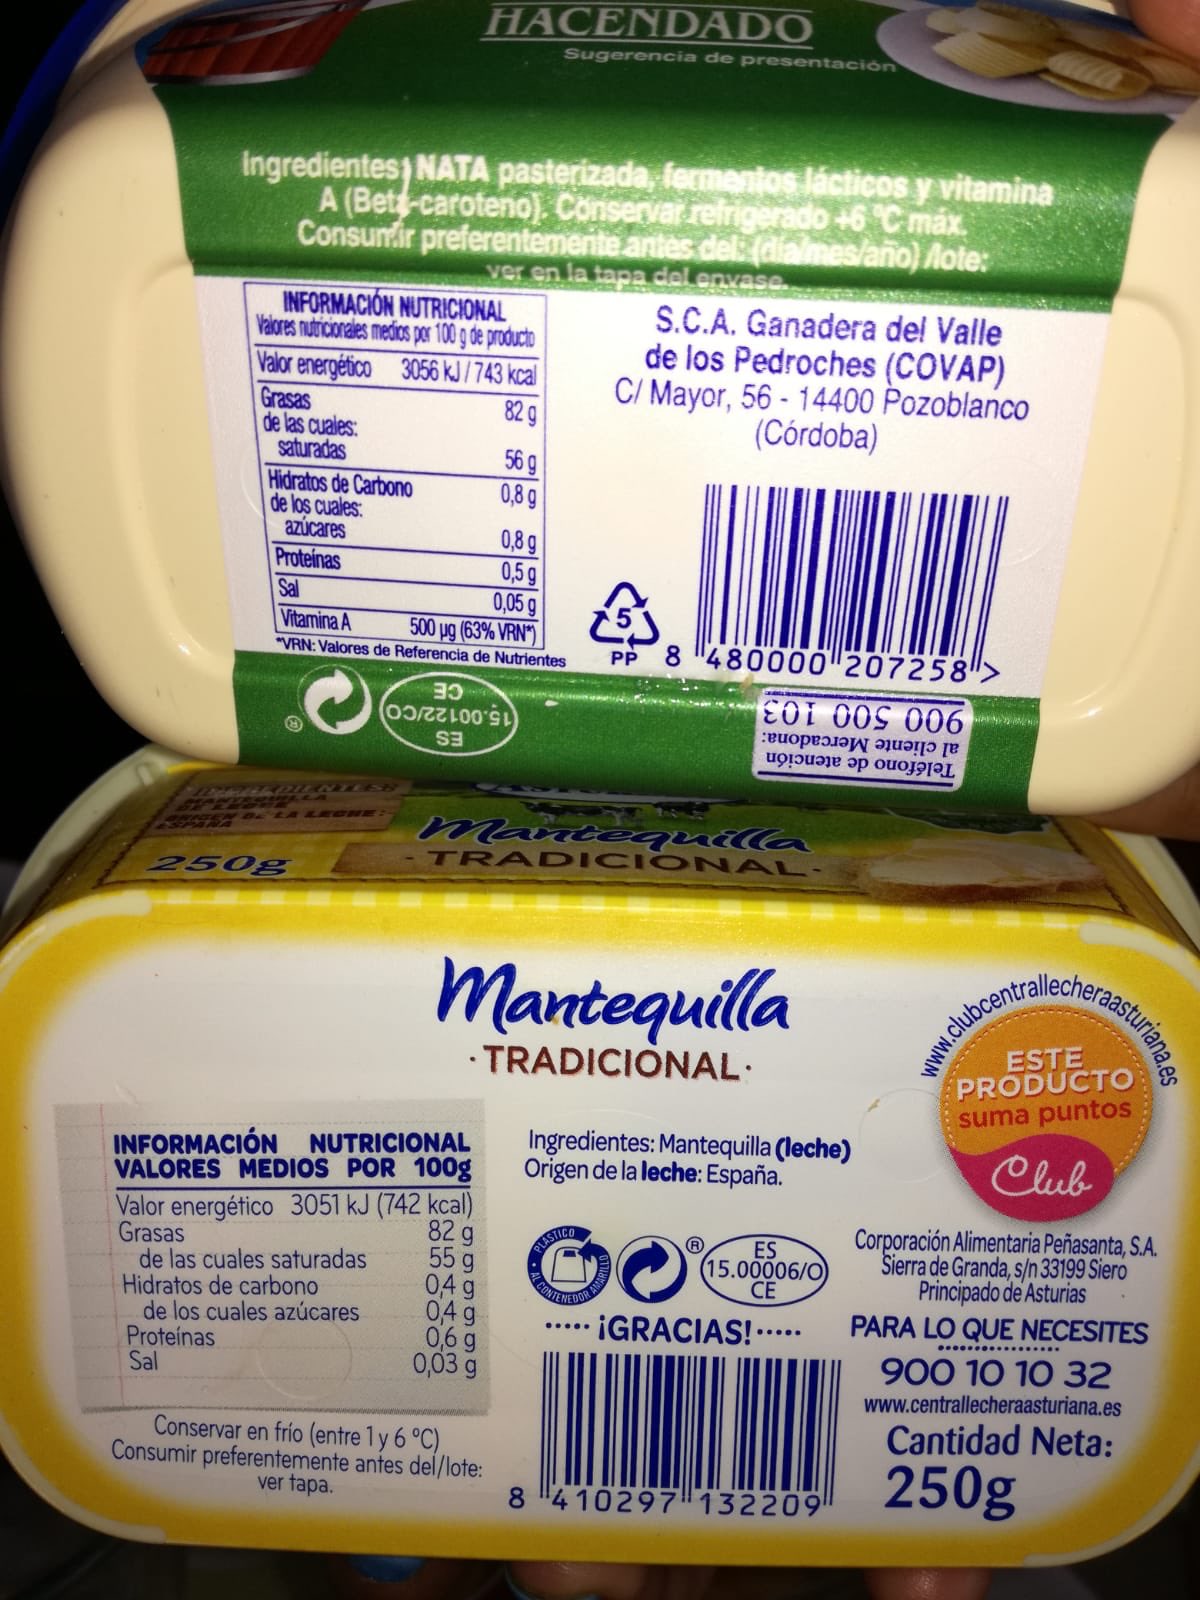 Rodperla on X: "Alguien me explica por qué la mantequilla sin sal añadida  tiene más sal que la mantequilla tradicional? #mercadona #hacendado #sinsal  @Mercadona https://t.co/xzjLQj7pGY" / X